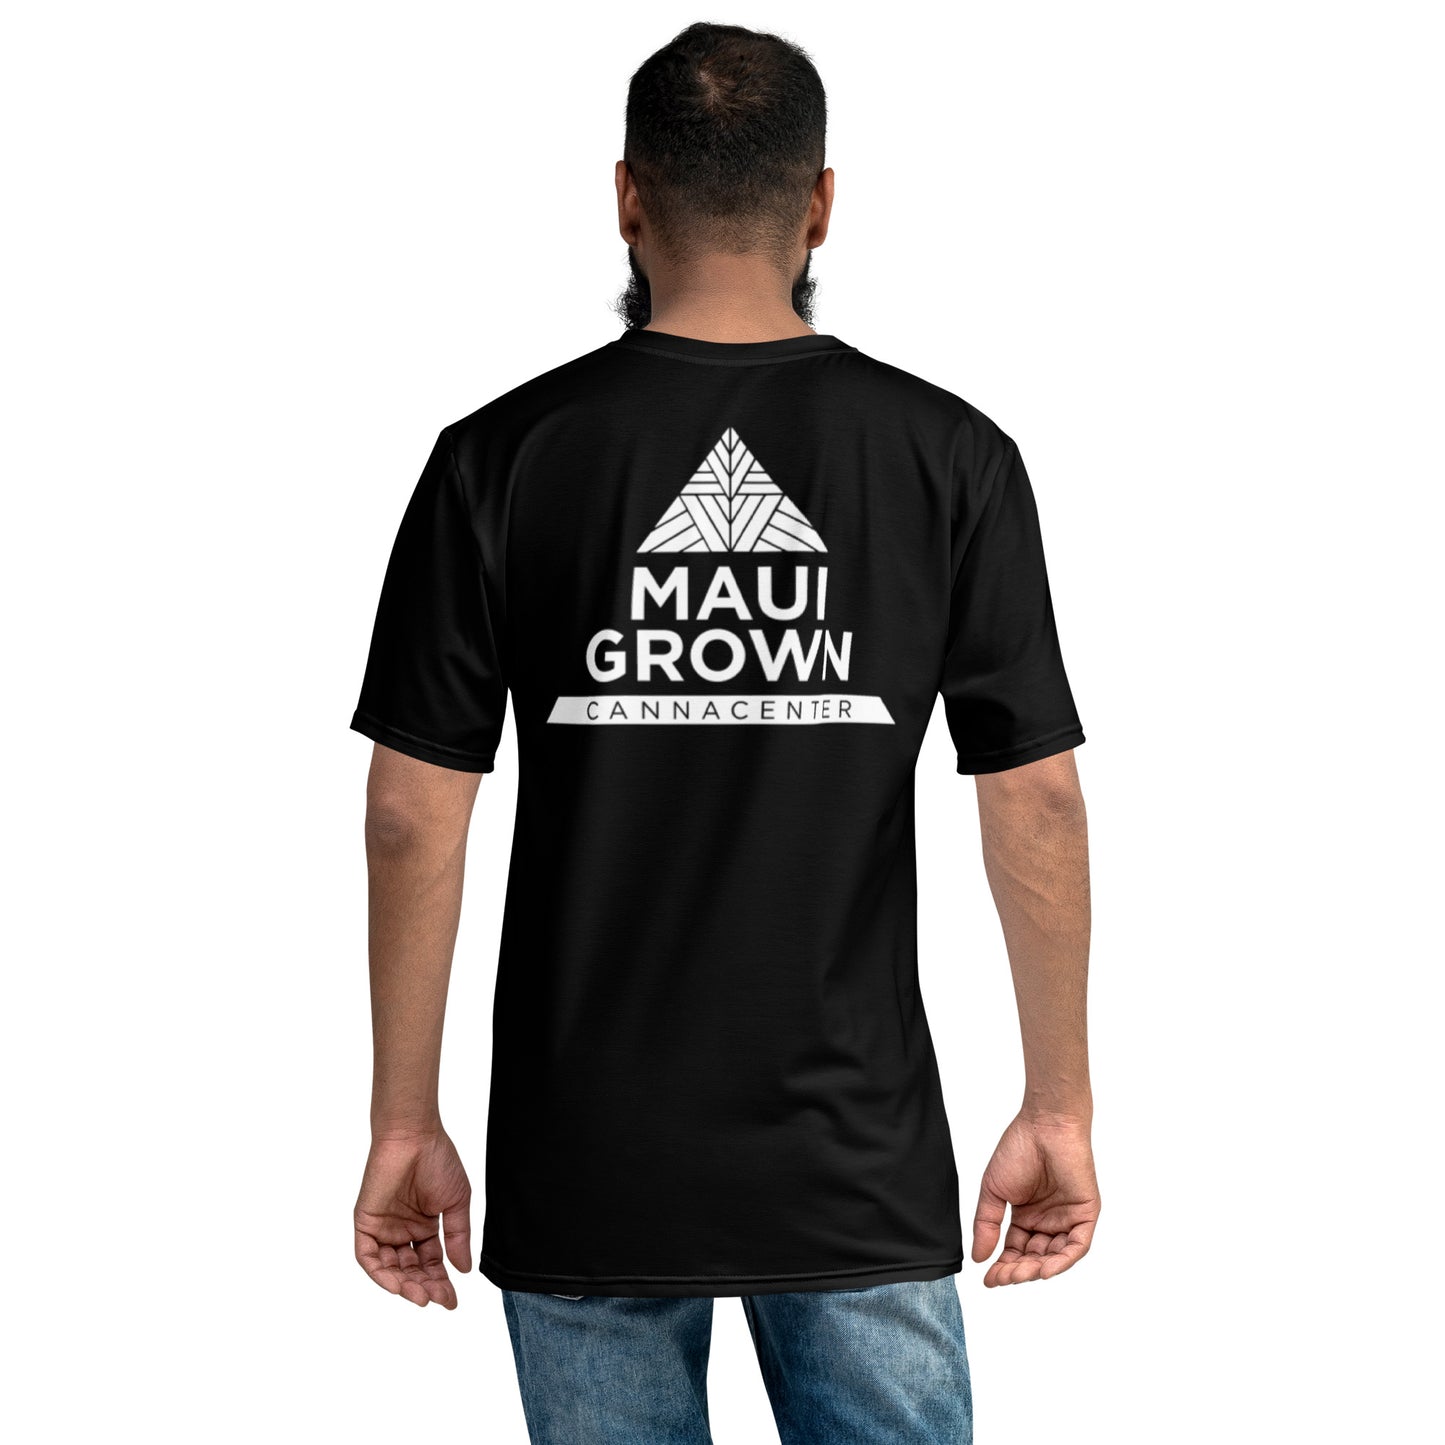 Maui Grown Cannacenter Men's Sublimated T-Shirt - Black